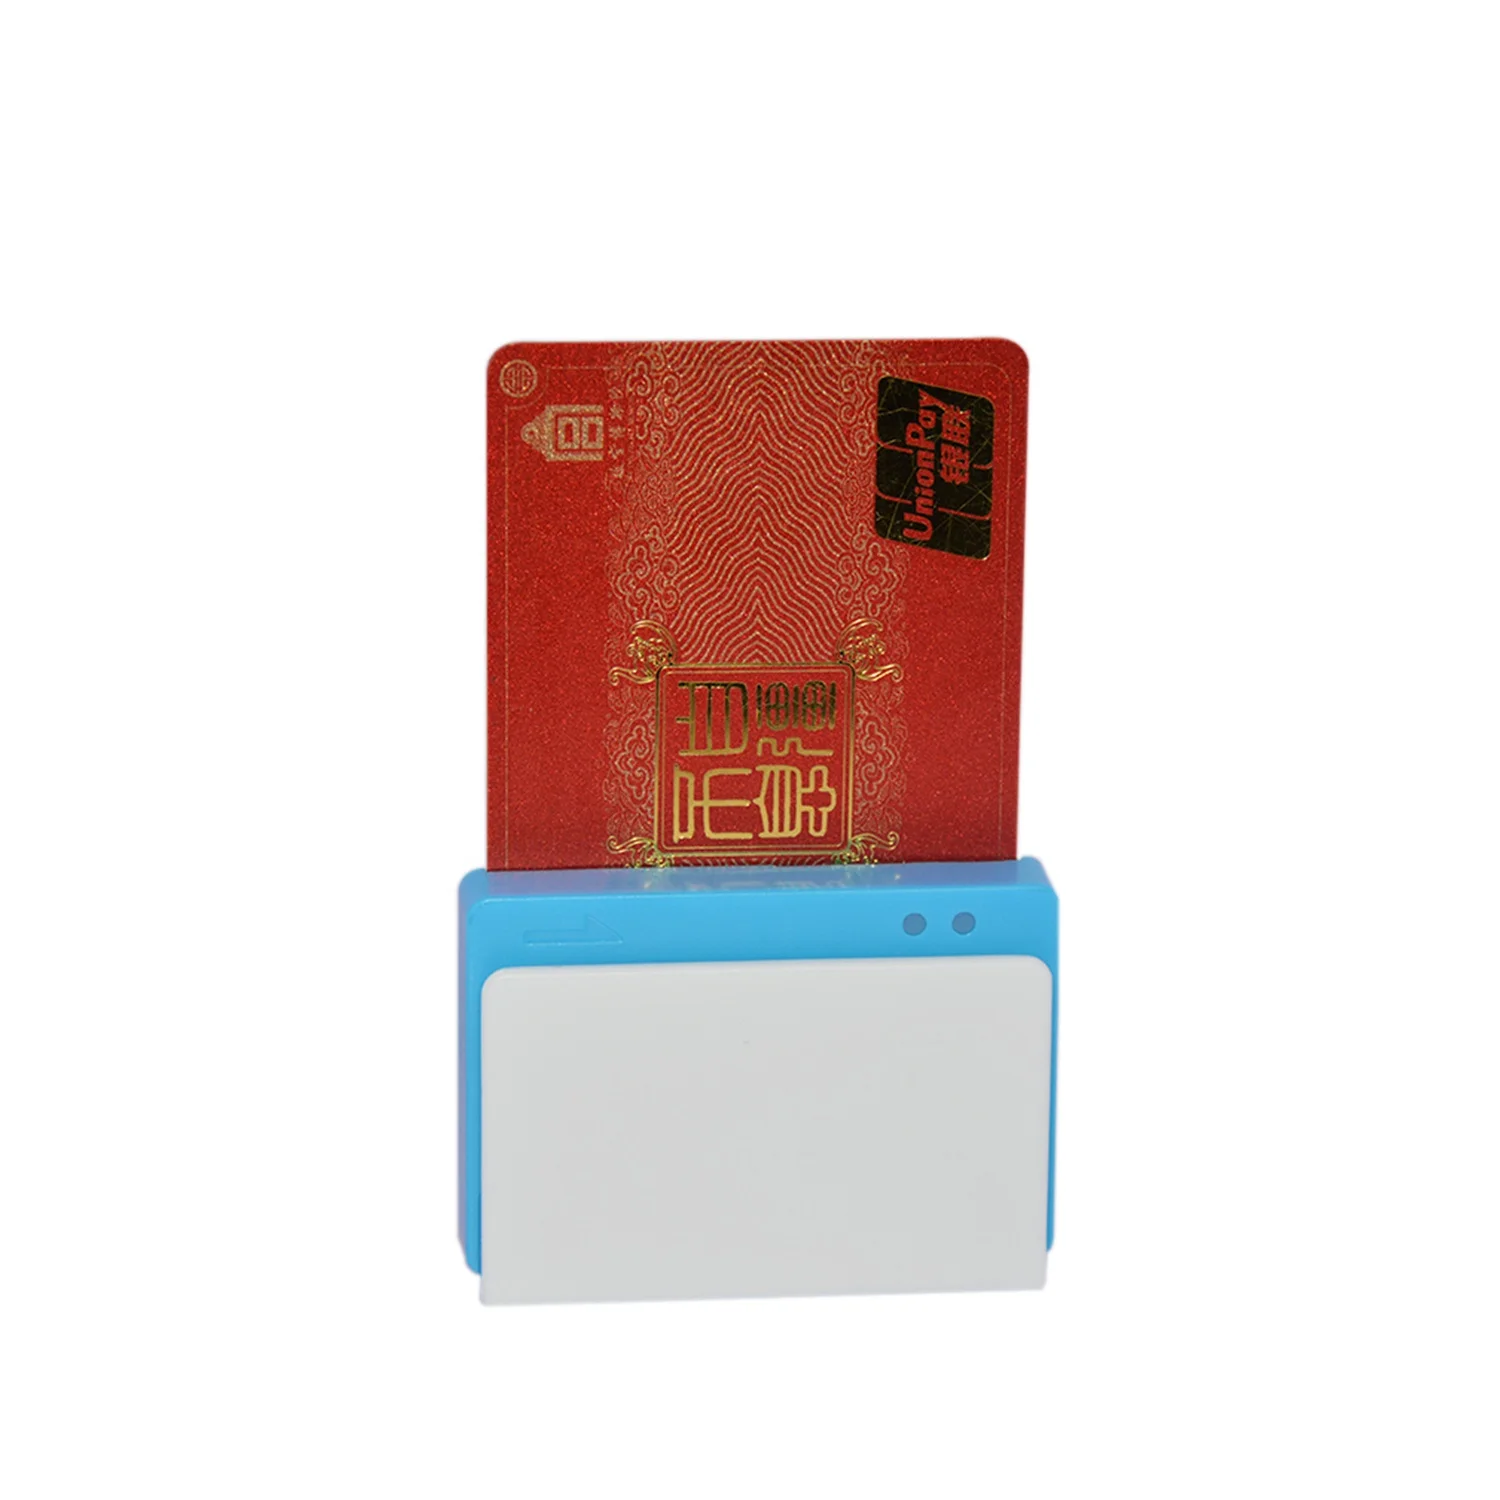 
OEM Mobile Wireless Smart EMV MSR Chip Card Reader Writer MPR100  (60732630613)